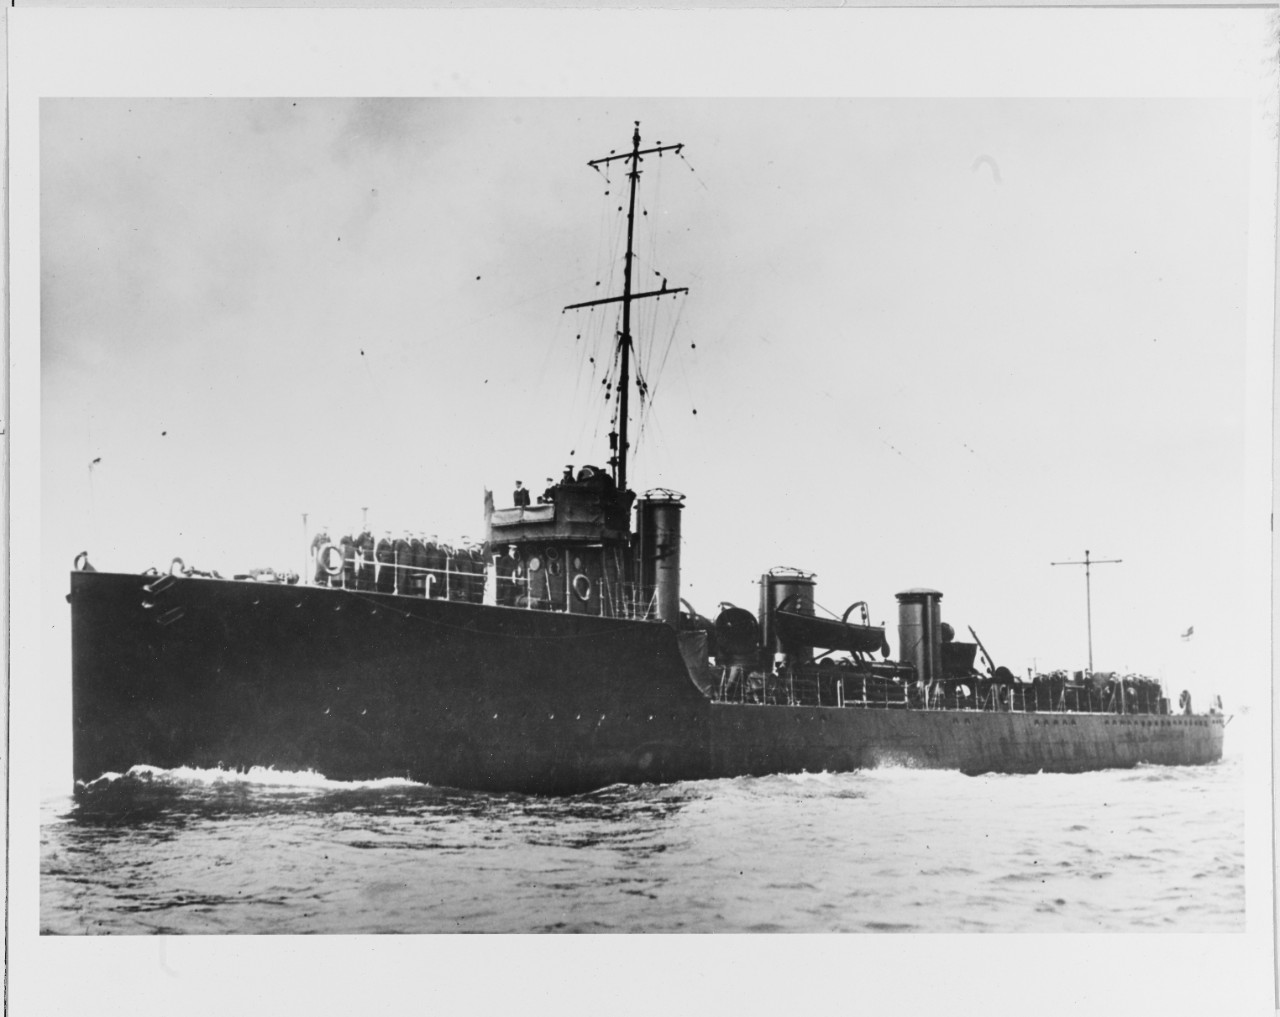 HMS ACHATES (British destroyer, 1912), circa 1914